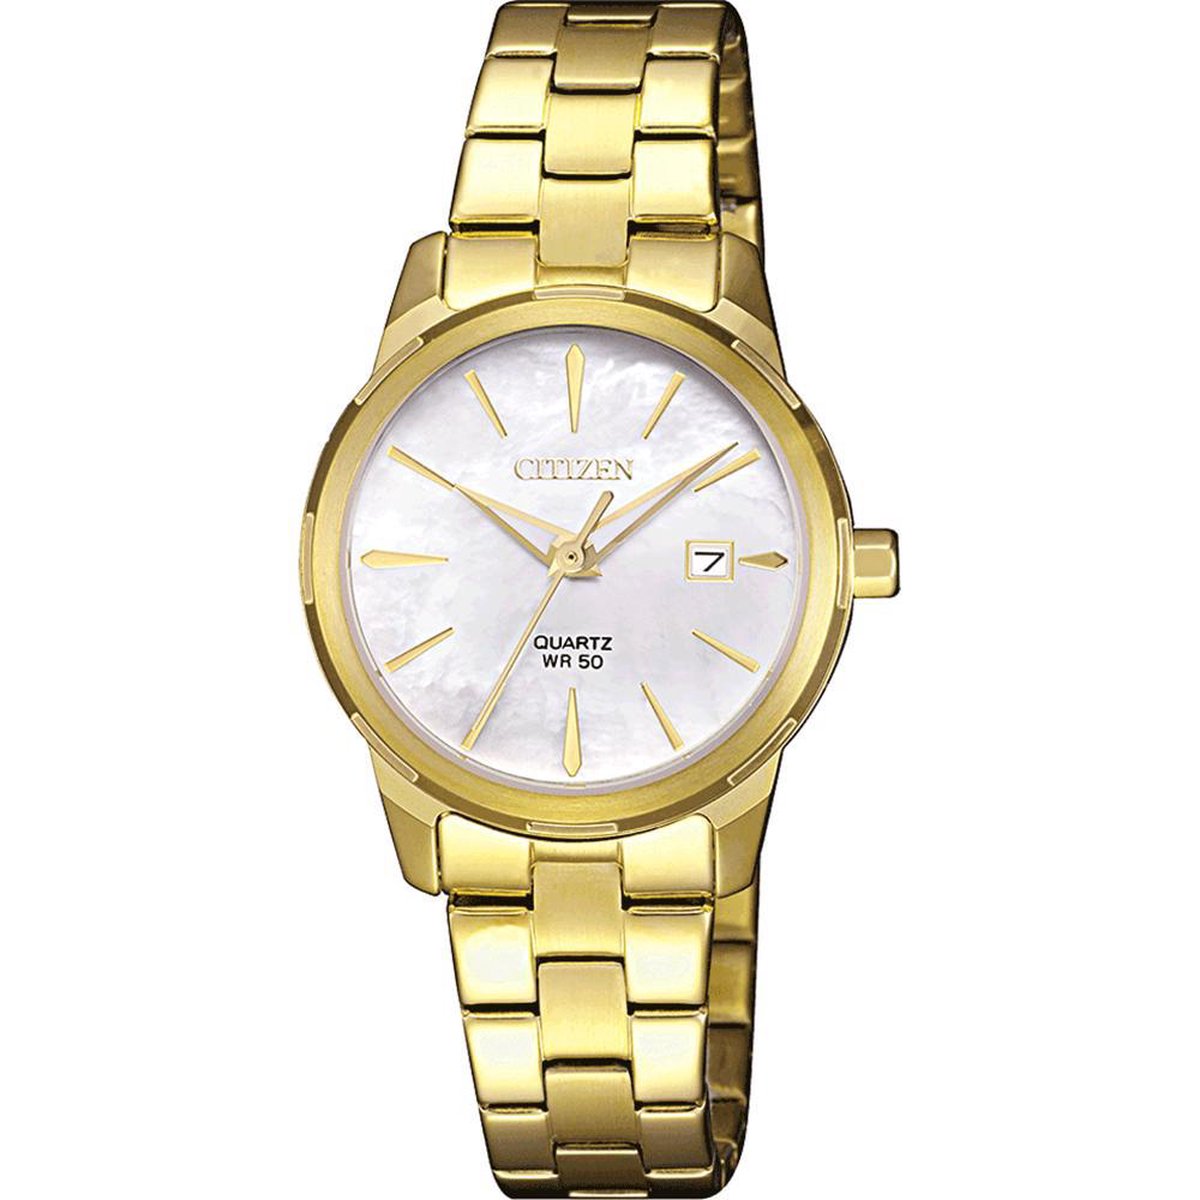 Citizen Horloge - Citizen dames horloge - Parelmoer - diameter 28 mm - goud gecoat roestvrij staal